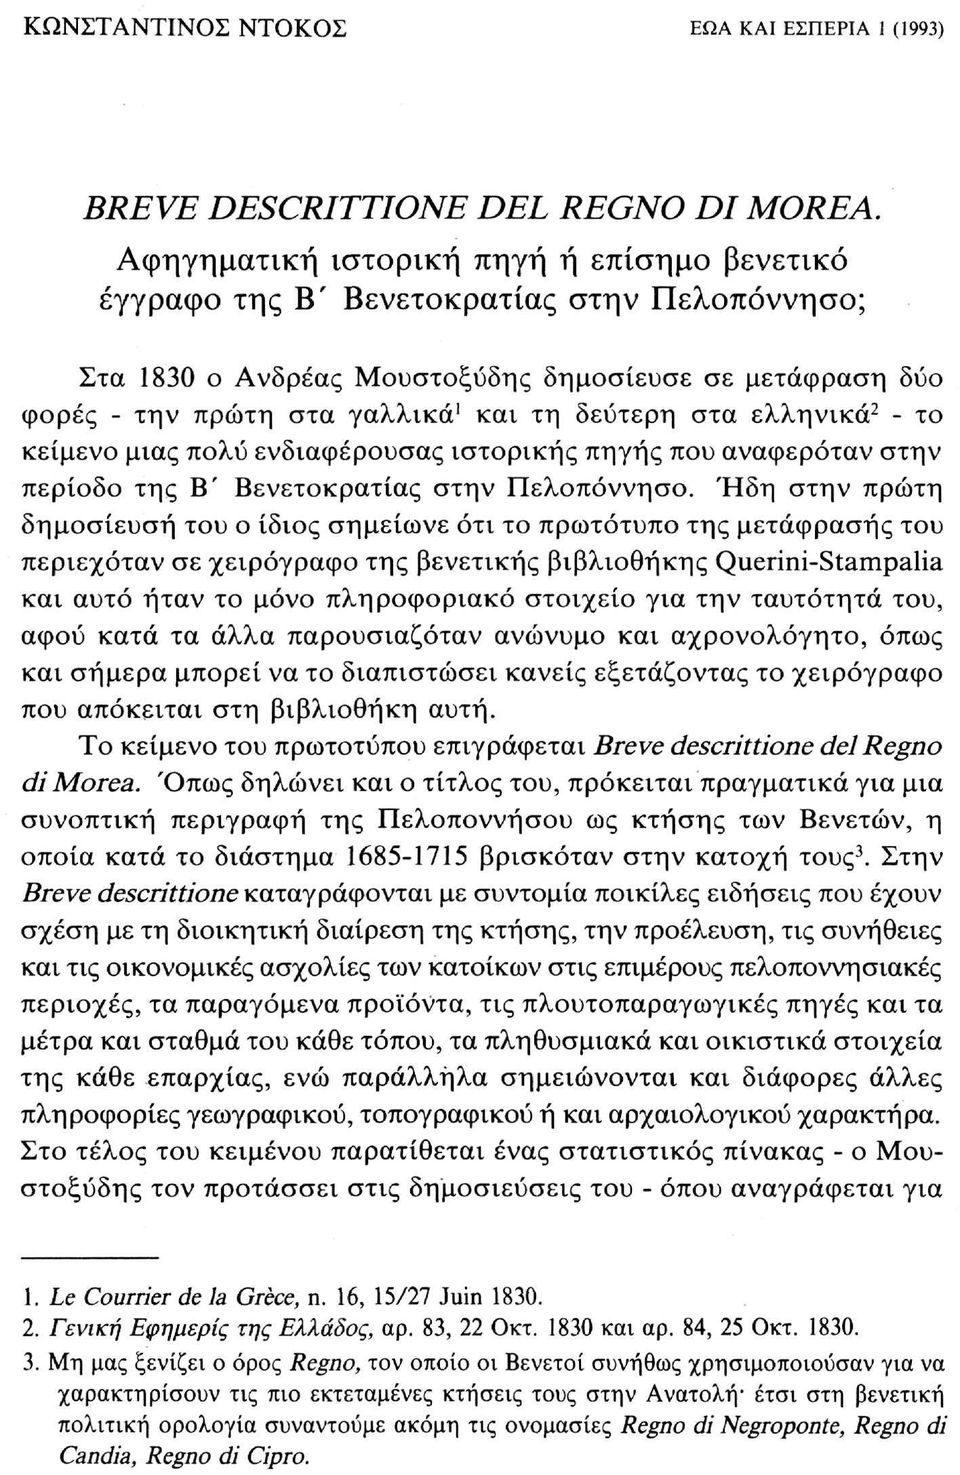 στα ελληνικά 2 - το κείμενο μιας πολύ ενδιαφέρουσας ιστορικής πηγής που αναφερόταν στην περίοδο της Β' Βενετοκρατίας στην Πελοπόννησο.